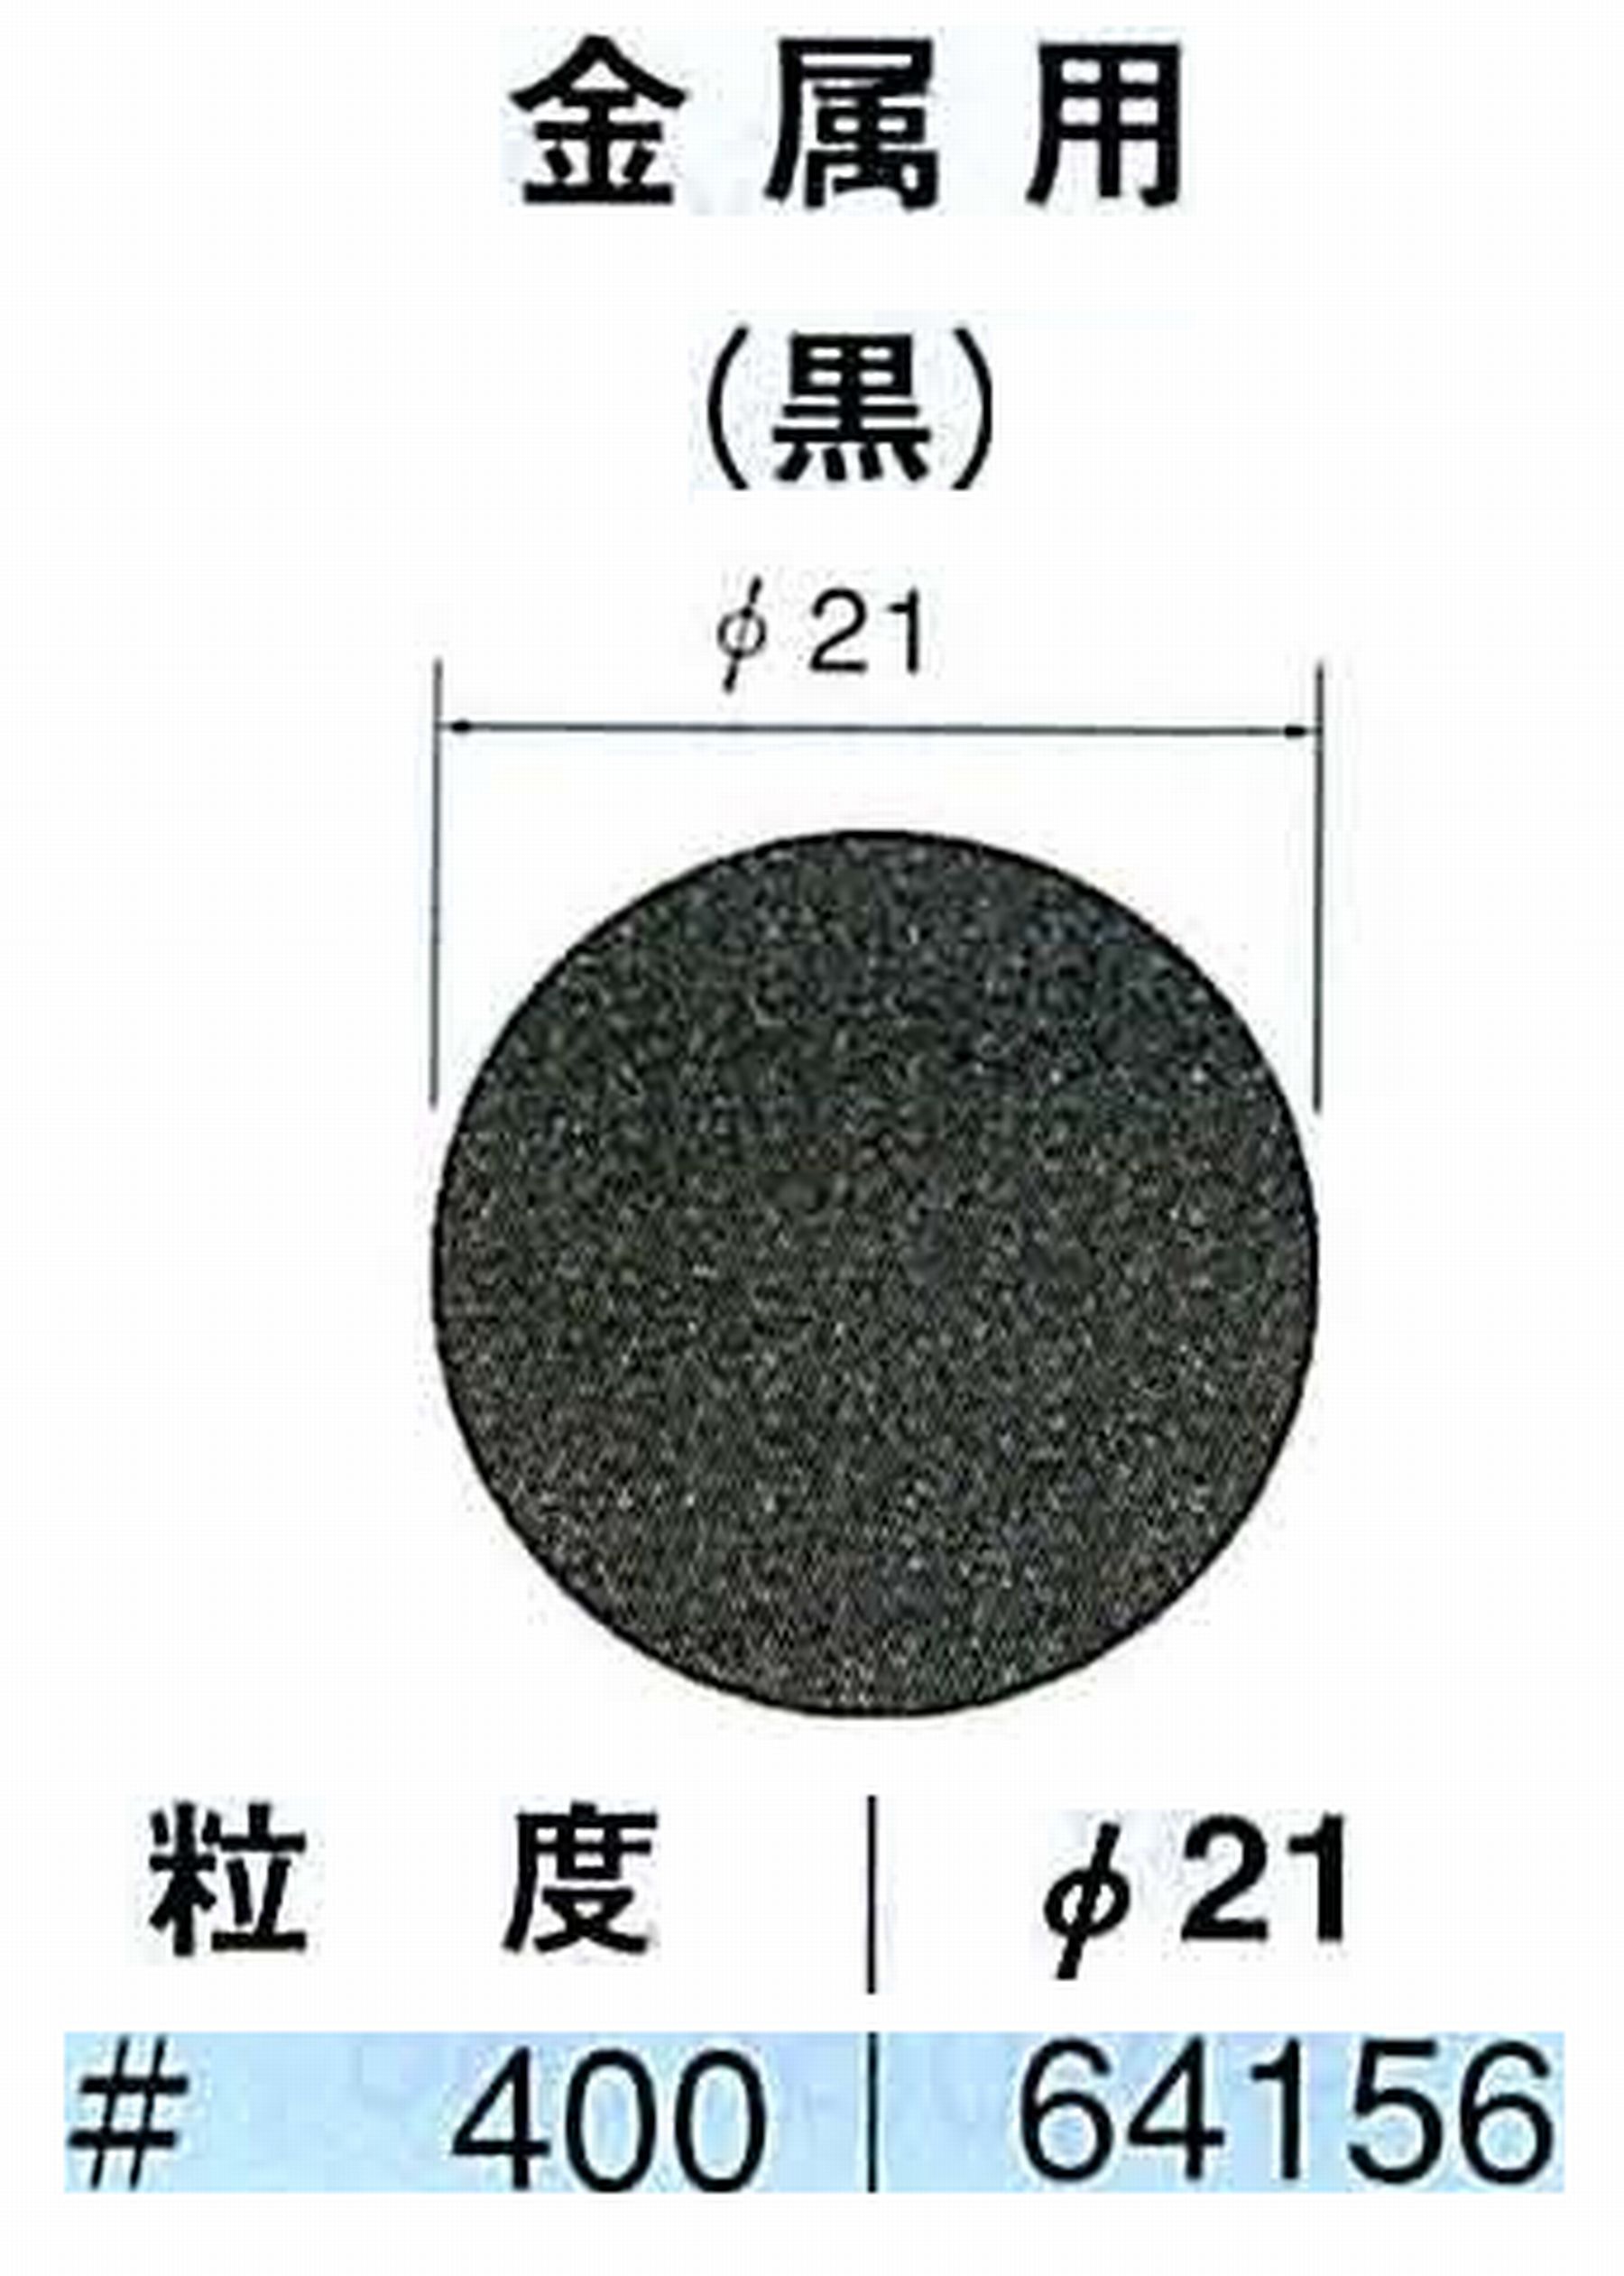 ナカニシ/NAKANISHI アングルグラインダ(電動・エアー) アングルアタッチメント専用工具 サンドペーパーディスク(紙基材タイプ)裏面のり処理 64156